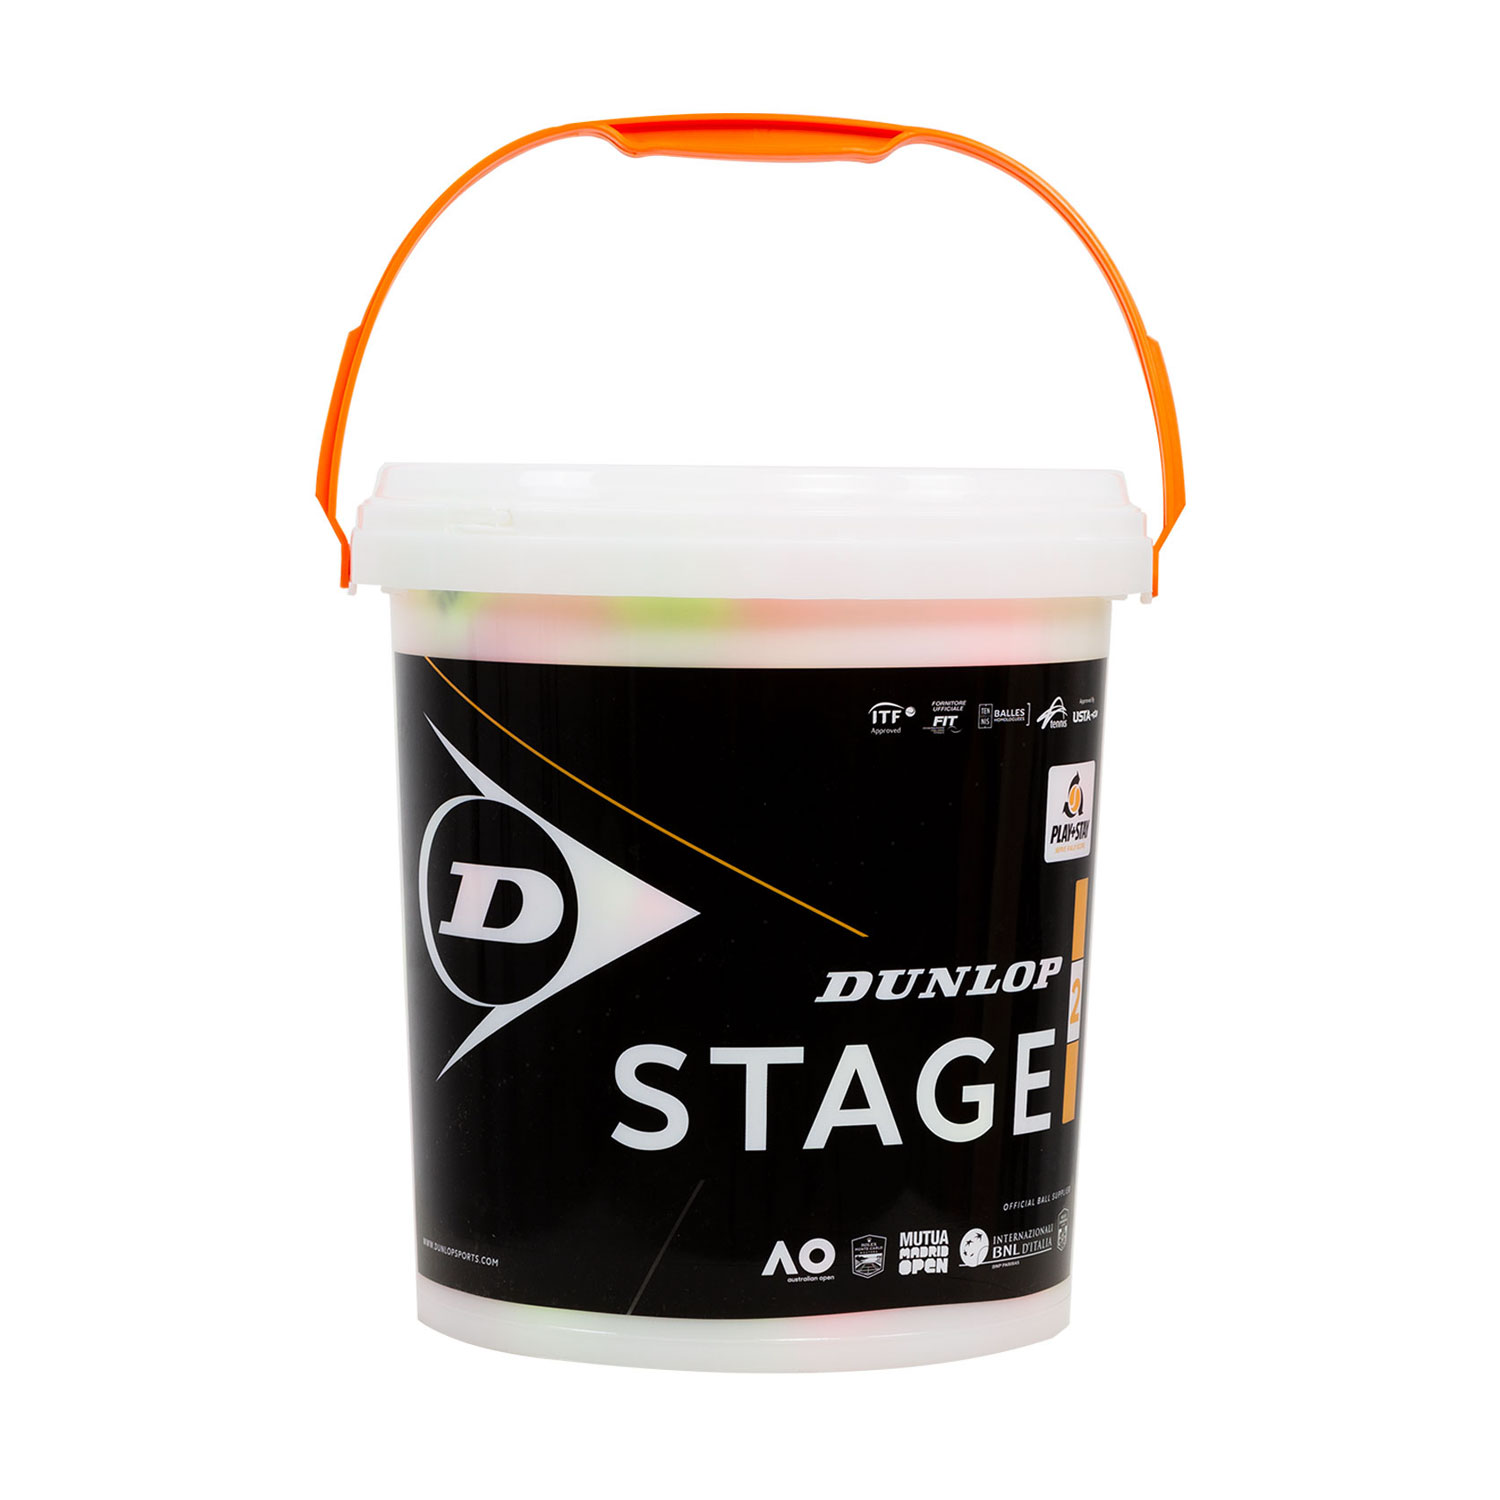 Dunlop Stage 2 Orange - Barile da 60 Palline